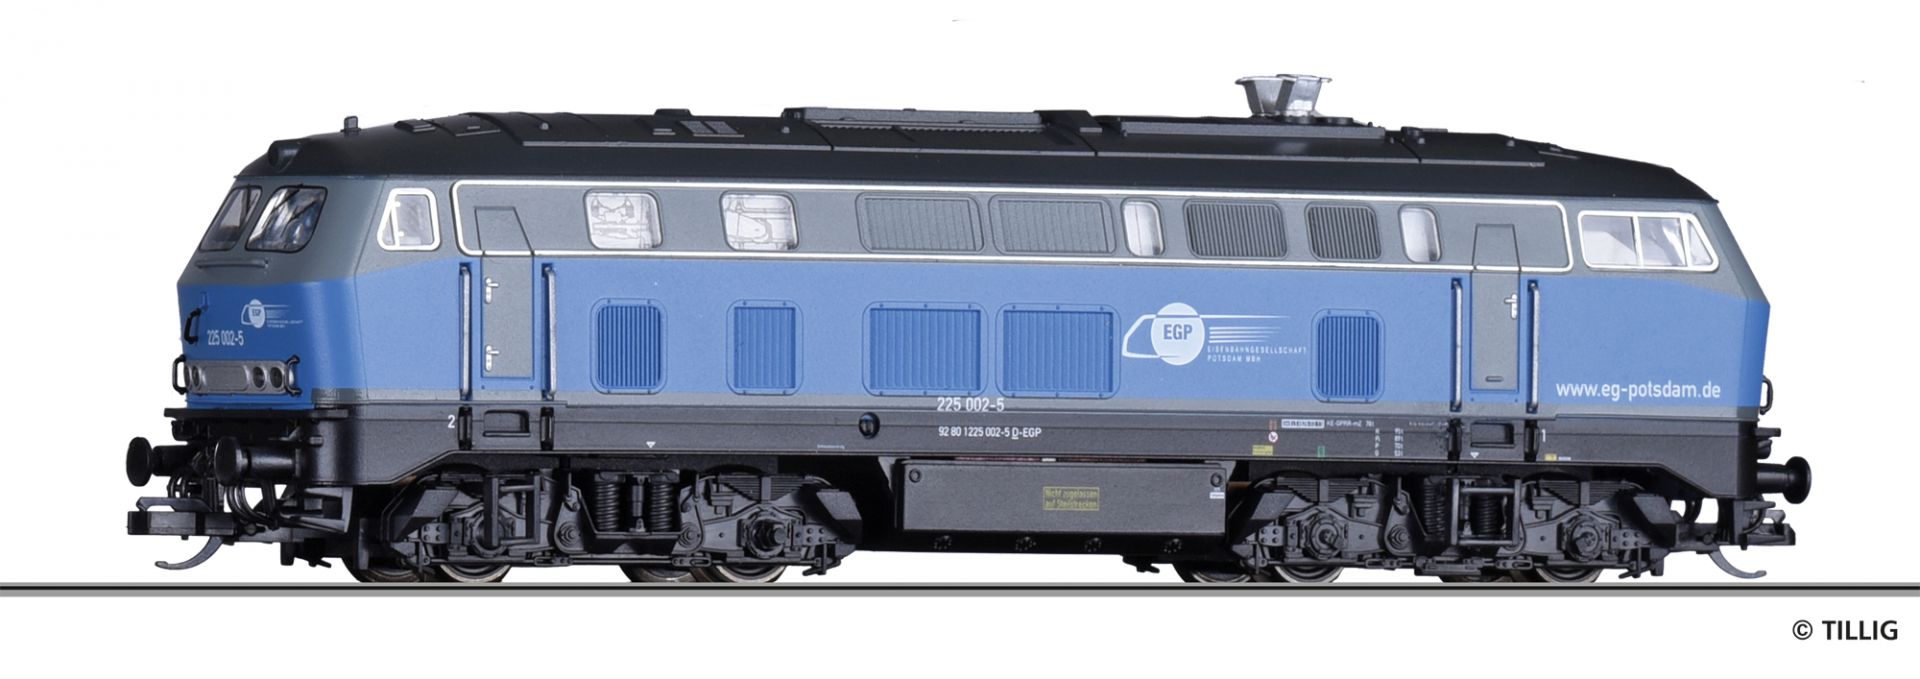 02724 | Diesellokomotive Eisenbahngesellschaft Potsdam mbH